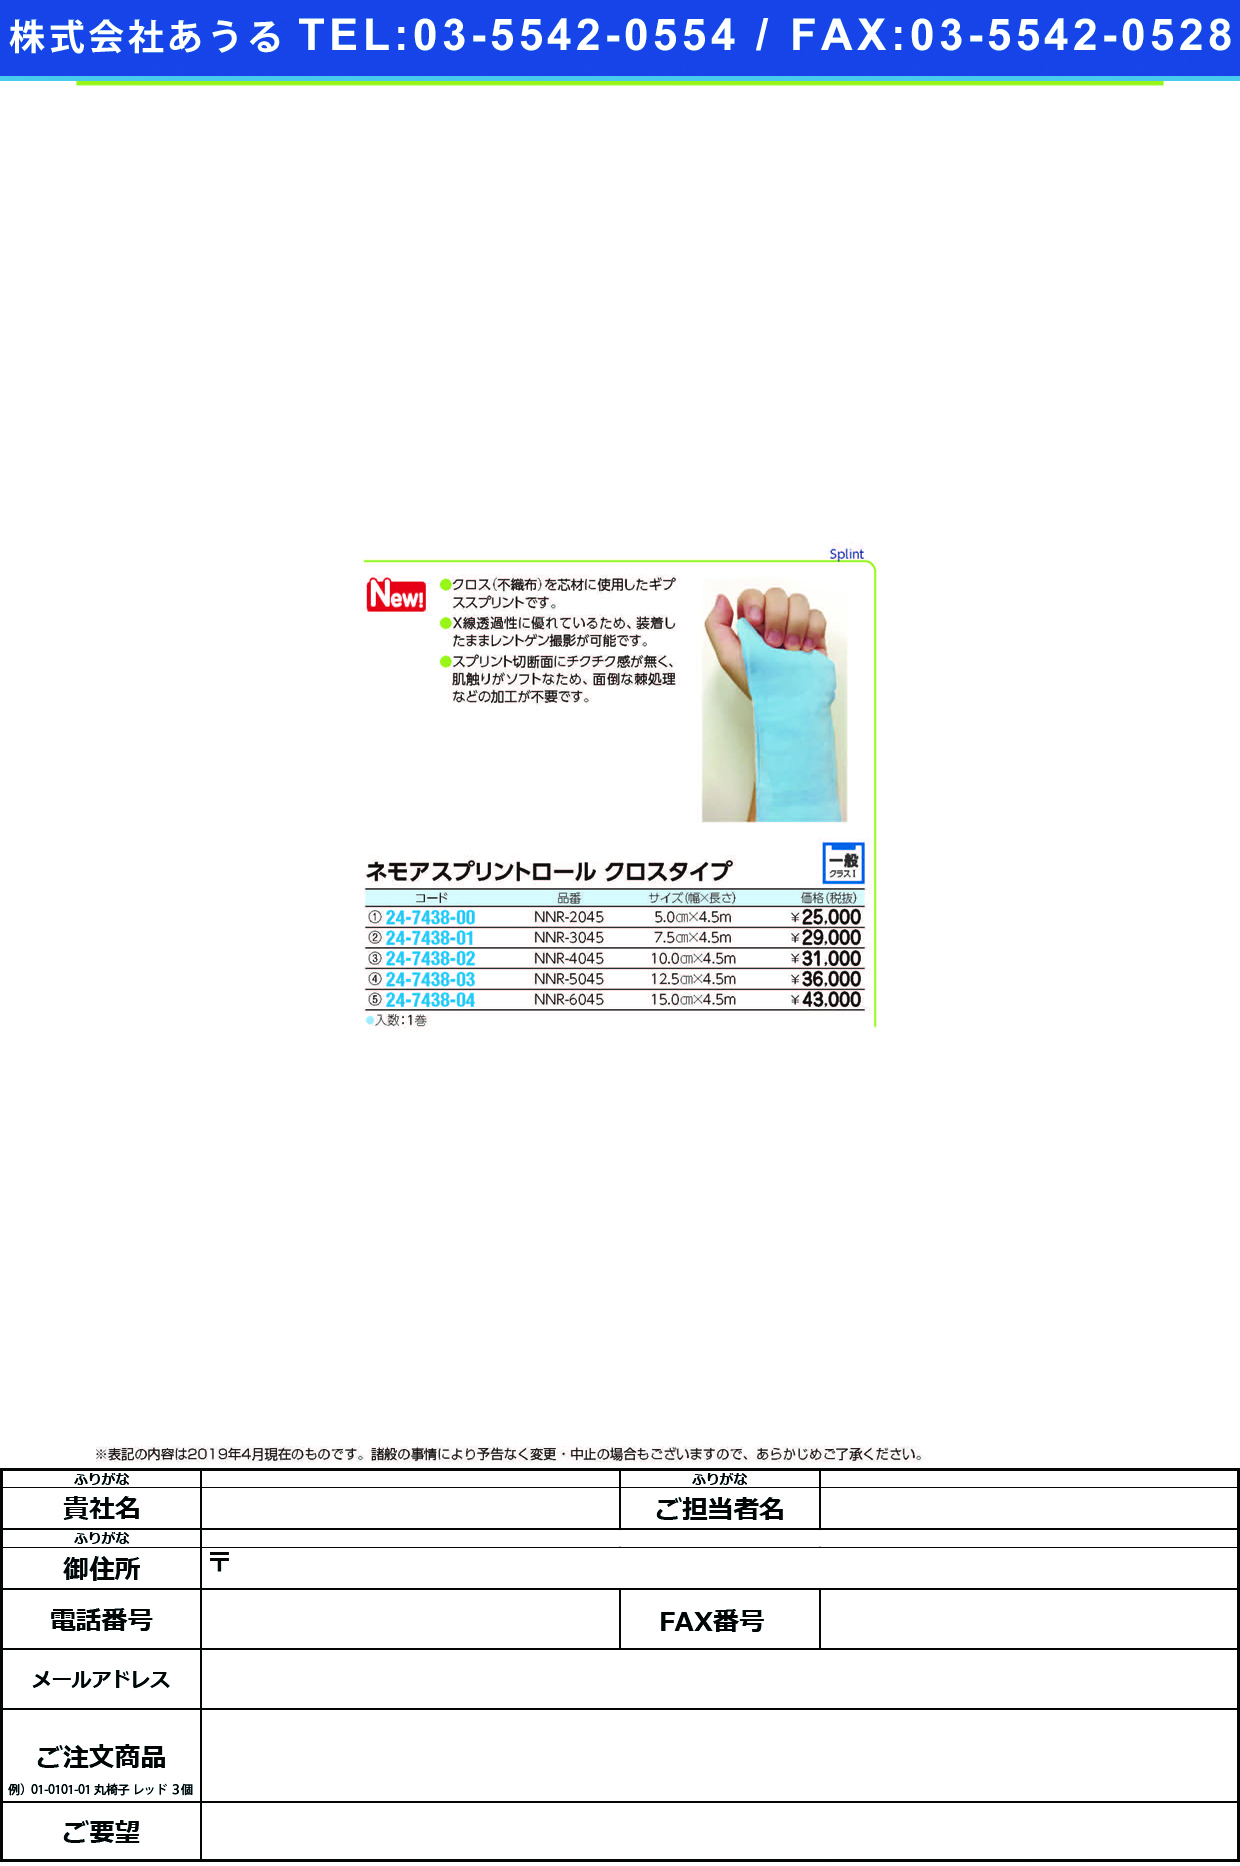 (24-7438-03)ネモアスプリントロール　クロスタイプNNR-5045(12.5X450CM) ﾈﾓｱｽﾌﾟﾘﾝﾄﾛｰﾙｳﾛｽﾀｲﾌﾟ(日本ハイテック)【1箱単位】【2019年カタログ商品】